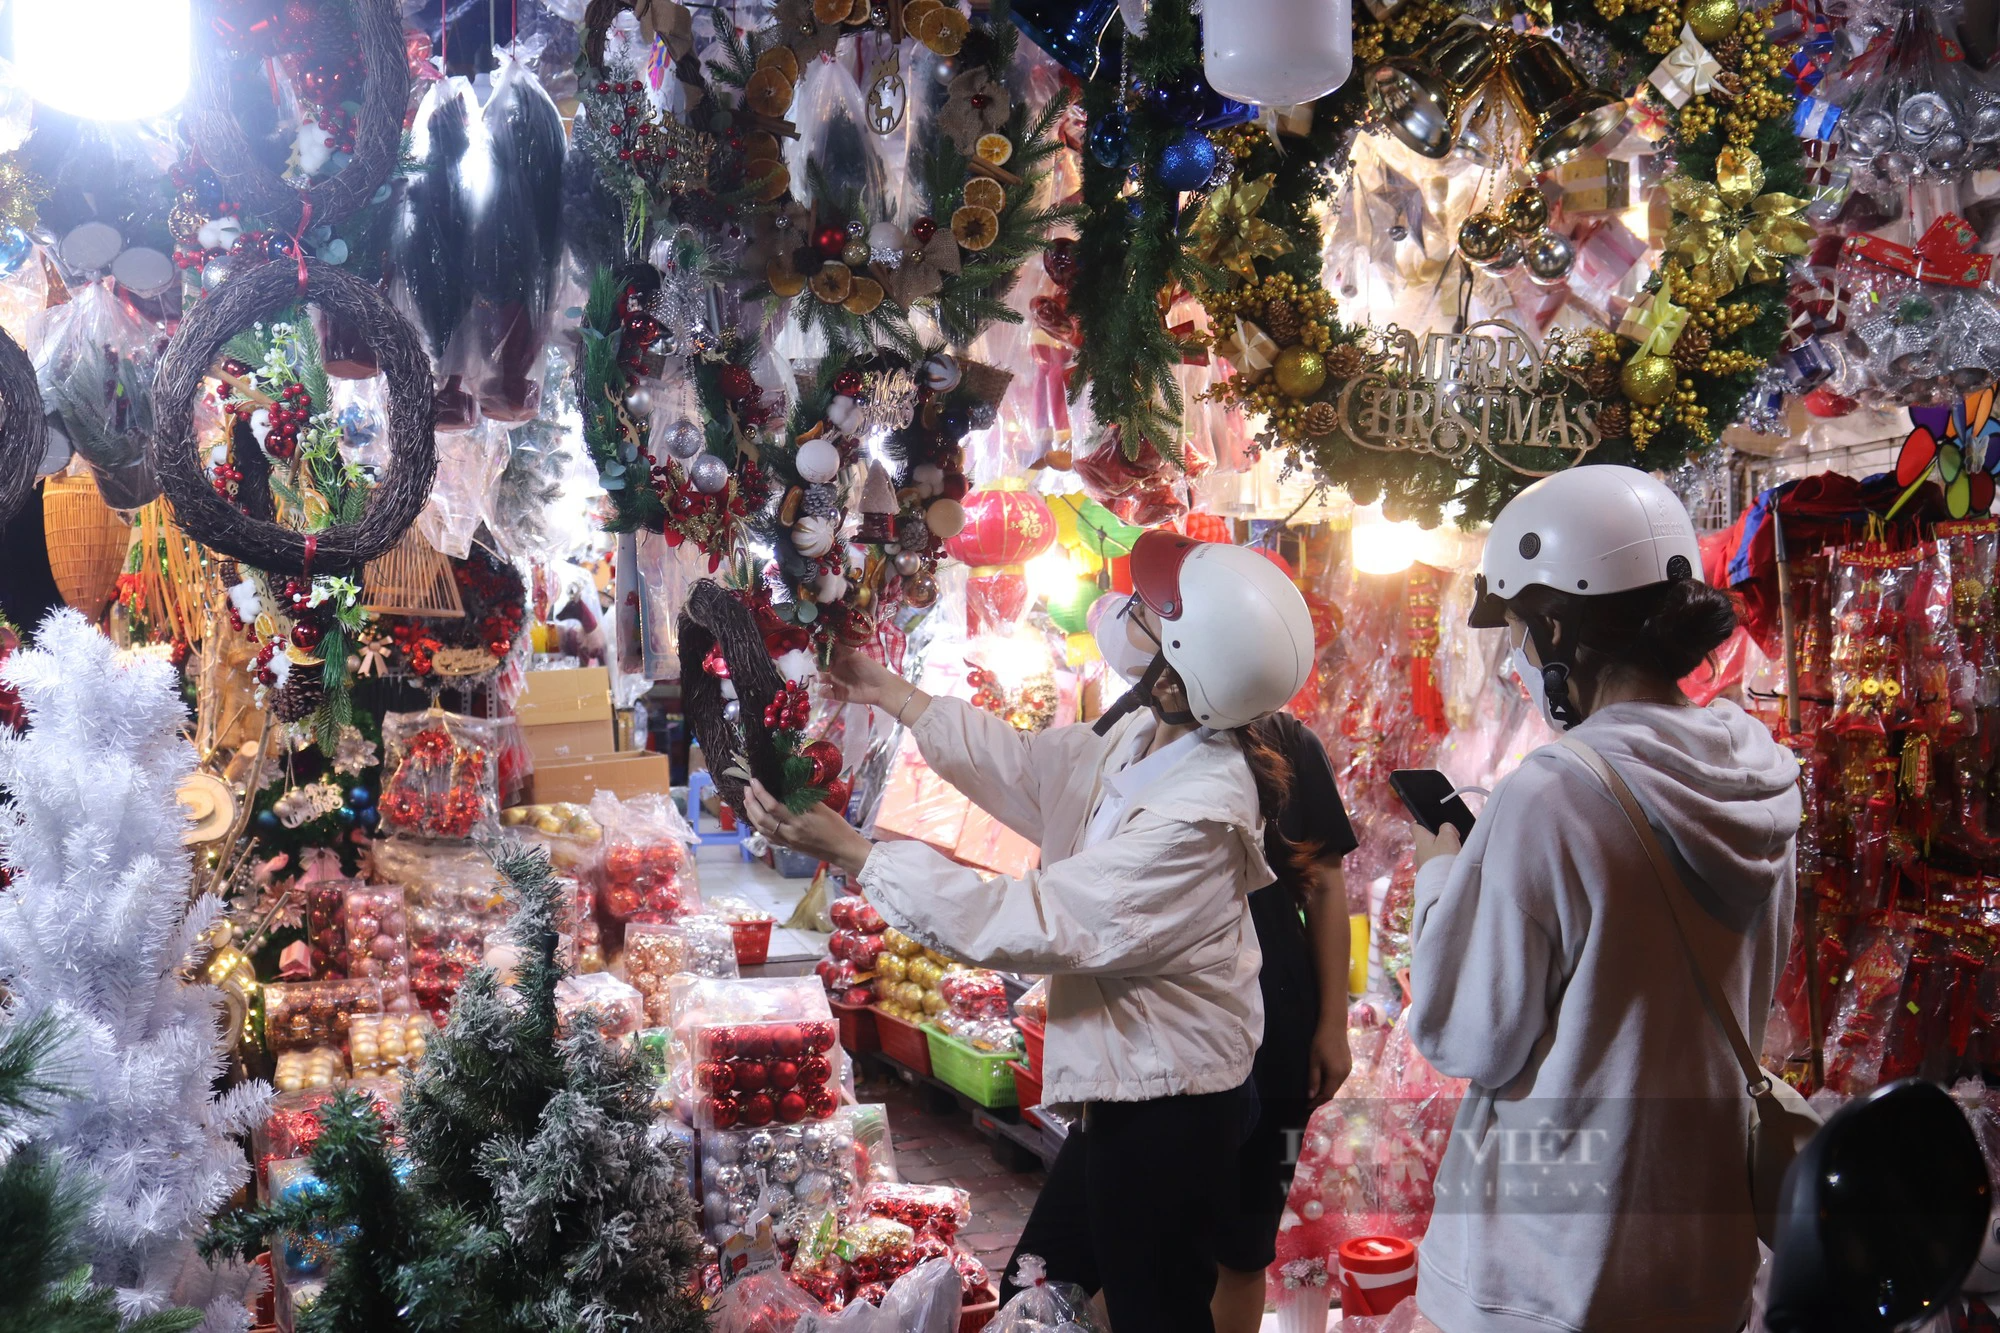 Con đường Giáng sinh lớn nhất Sài Gòn đã “lên đồ”, khách tấp nập mua thông về chơi Noel sớm - Ảnh 5.